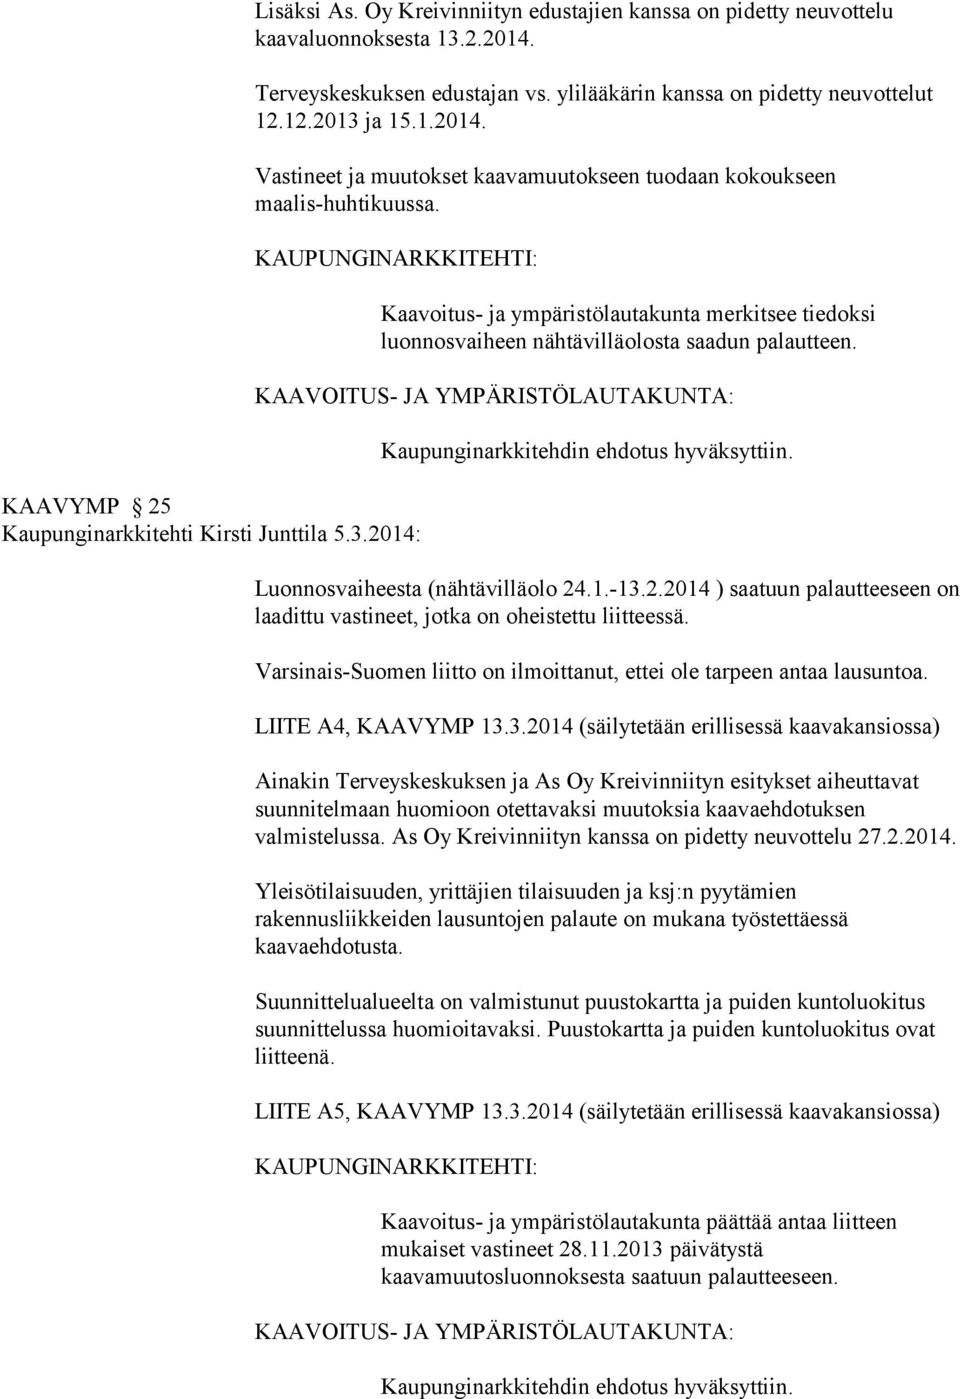 KAAVOITUS- JA YMPÄRISTÖLAUTAKUNTA: Kaupunginarkkitehdin ehdotus hyväksyttiin. Luonnosvaiheesta (nähtävilläolo 24.1.-13.2.2014 ) saatuun palautteeseen on laadittu vastineet, jotka on oheistettu liitteessä.